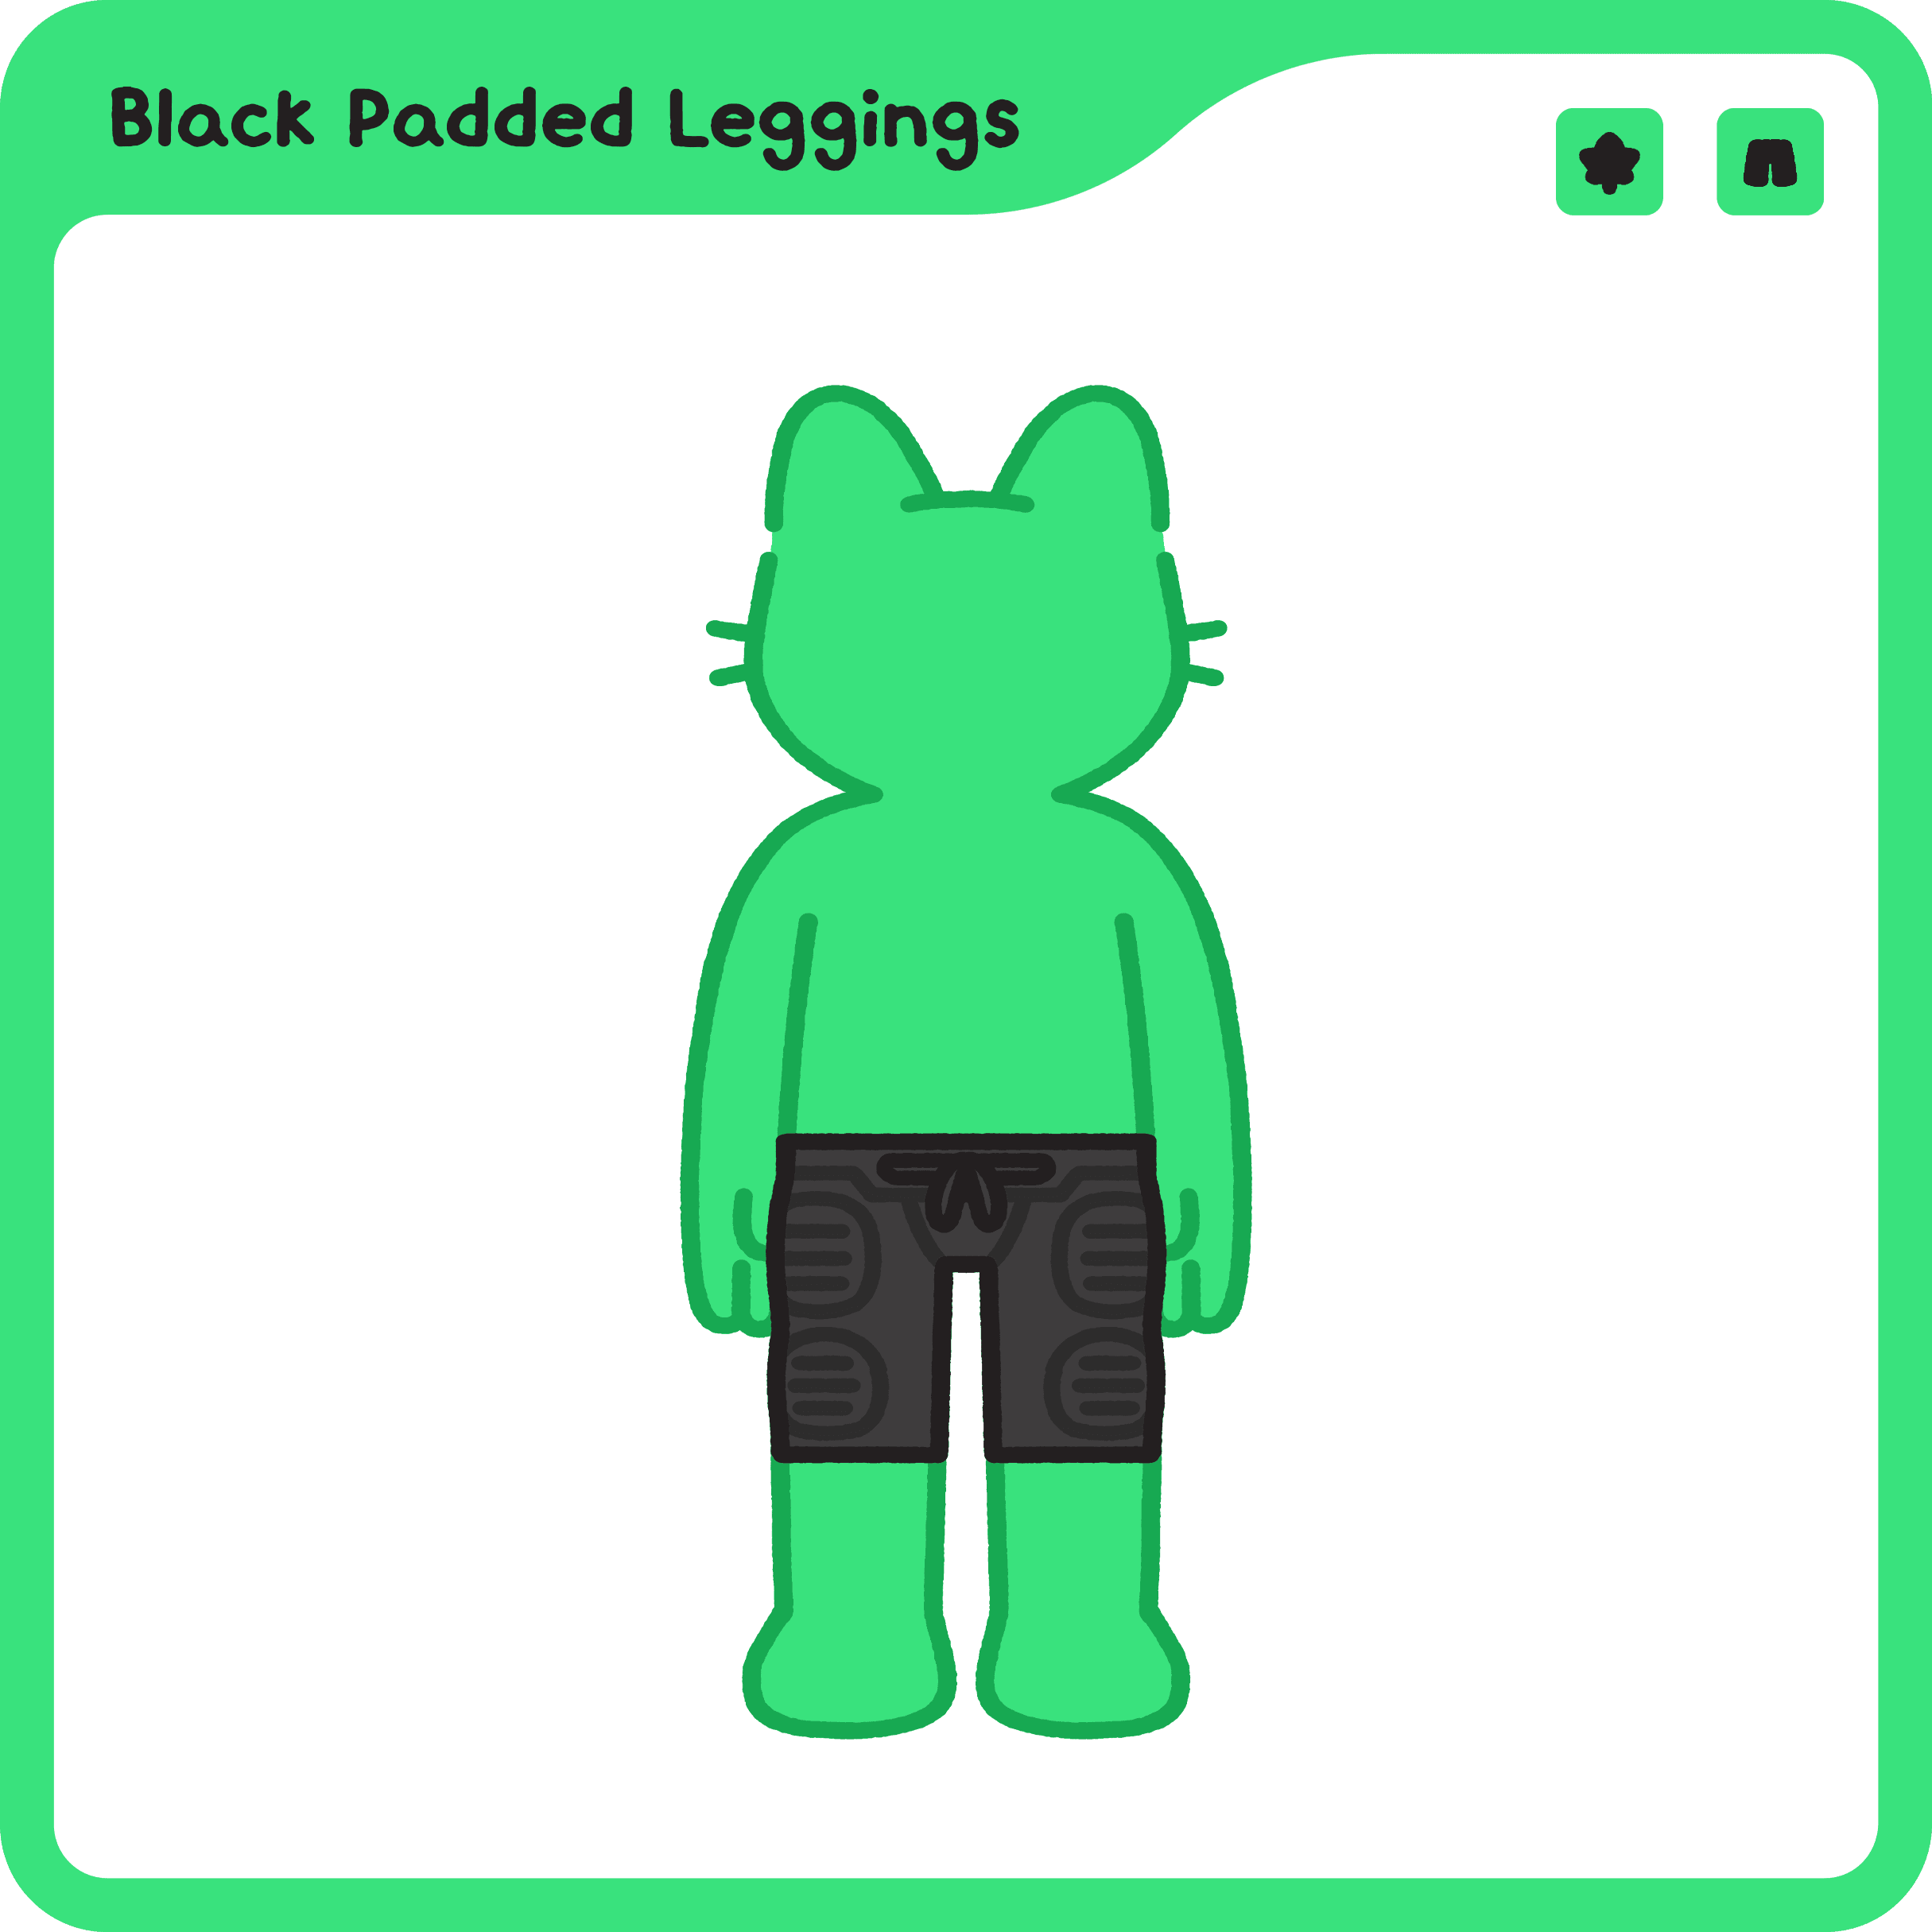 Black Padded Leggings